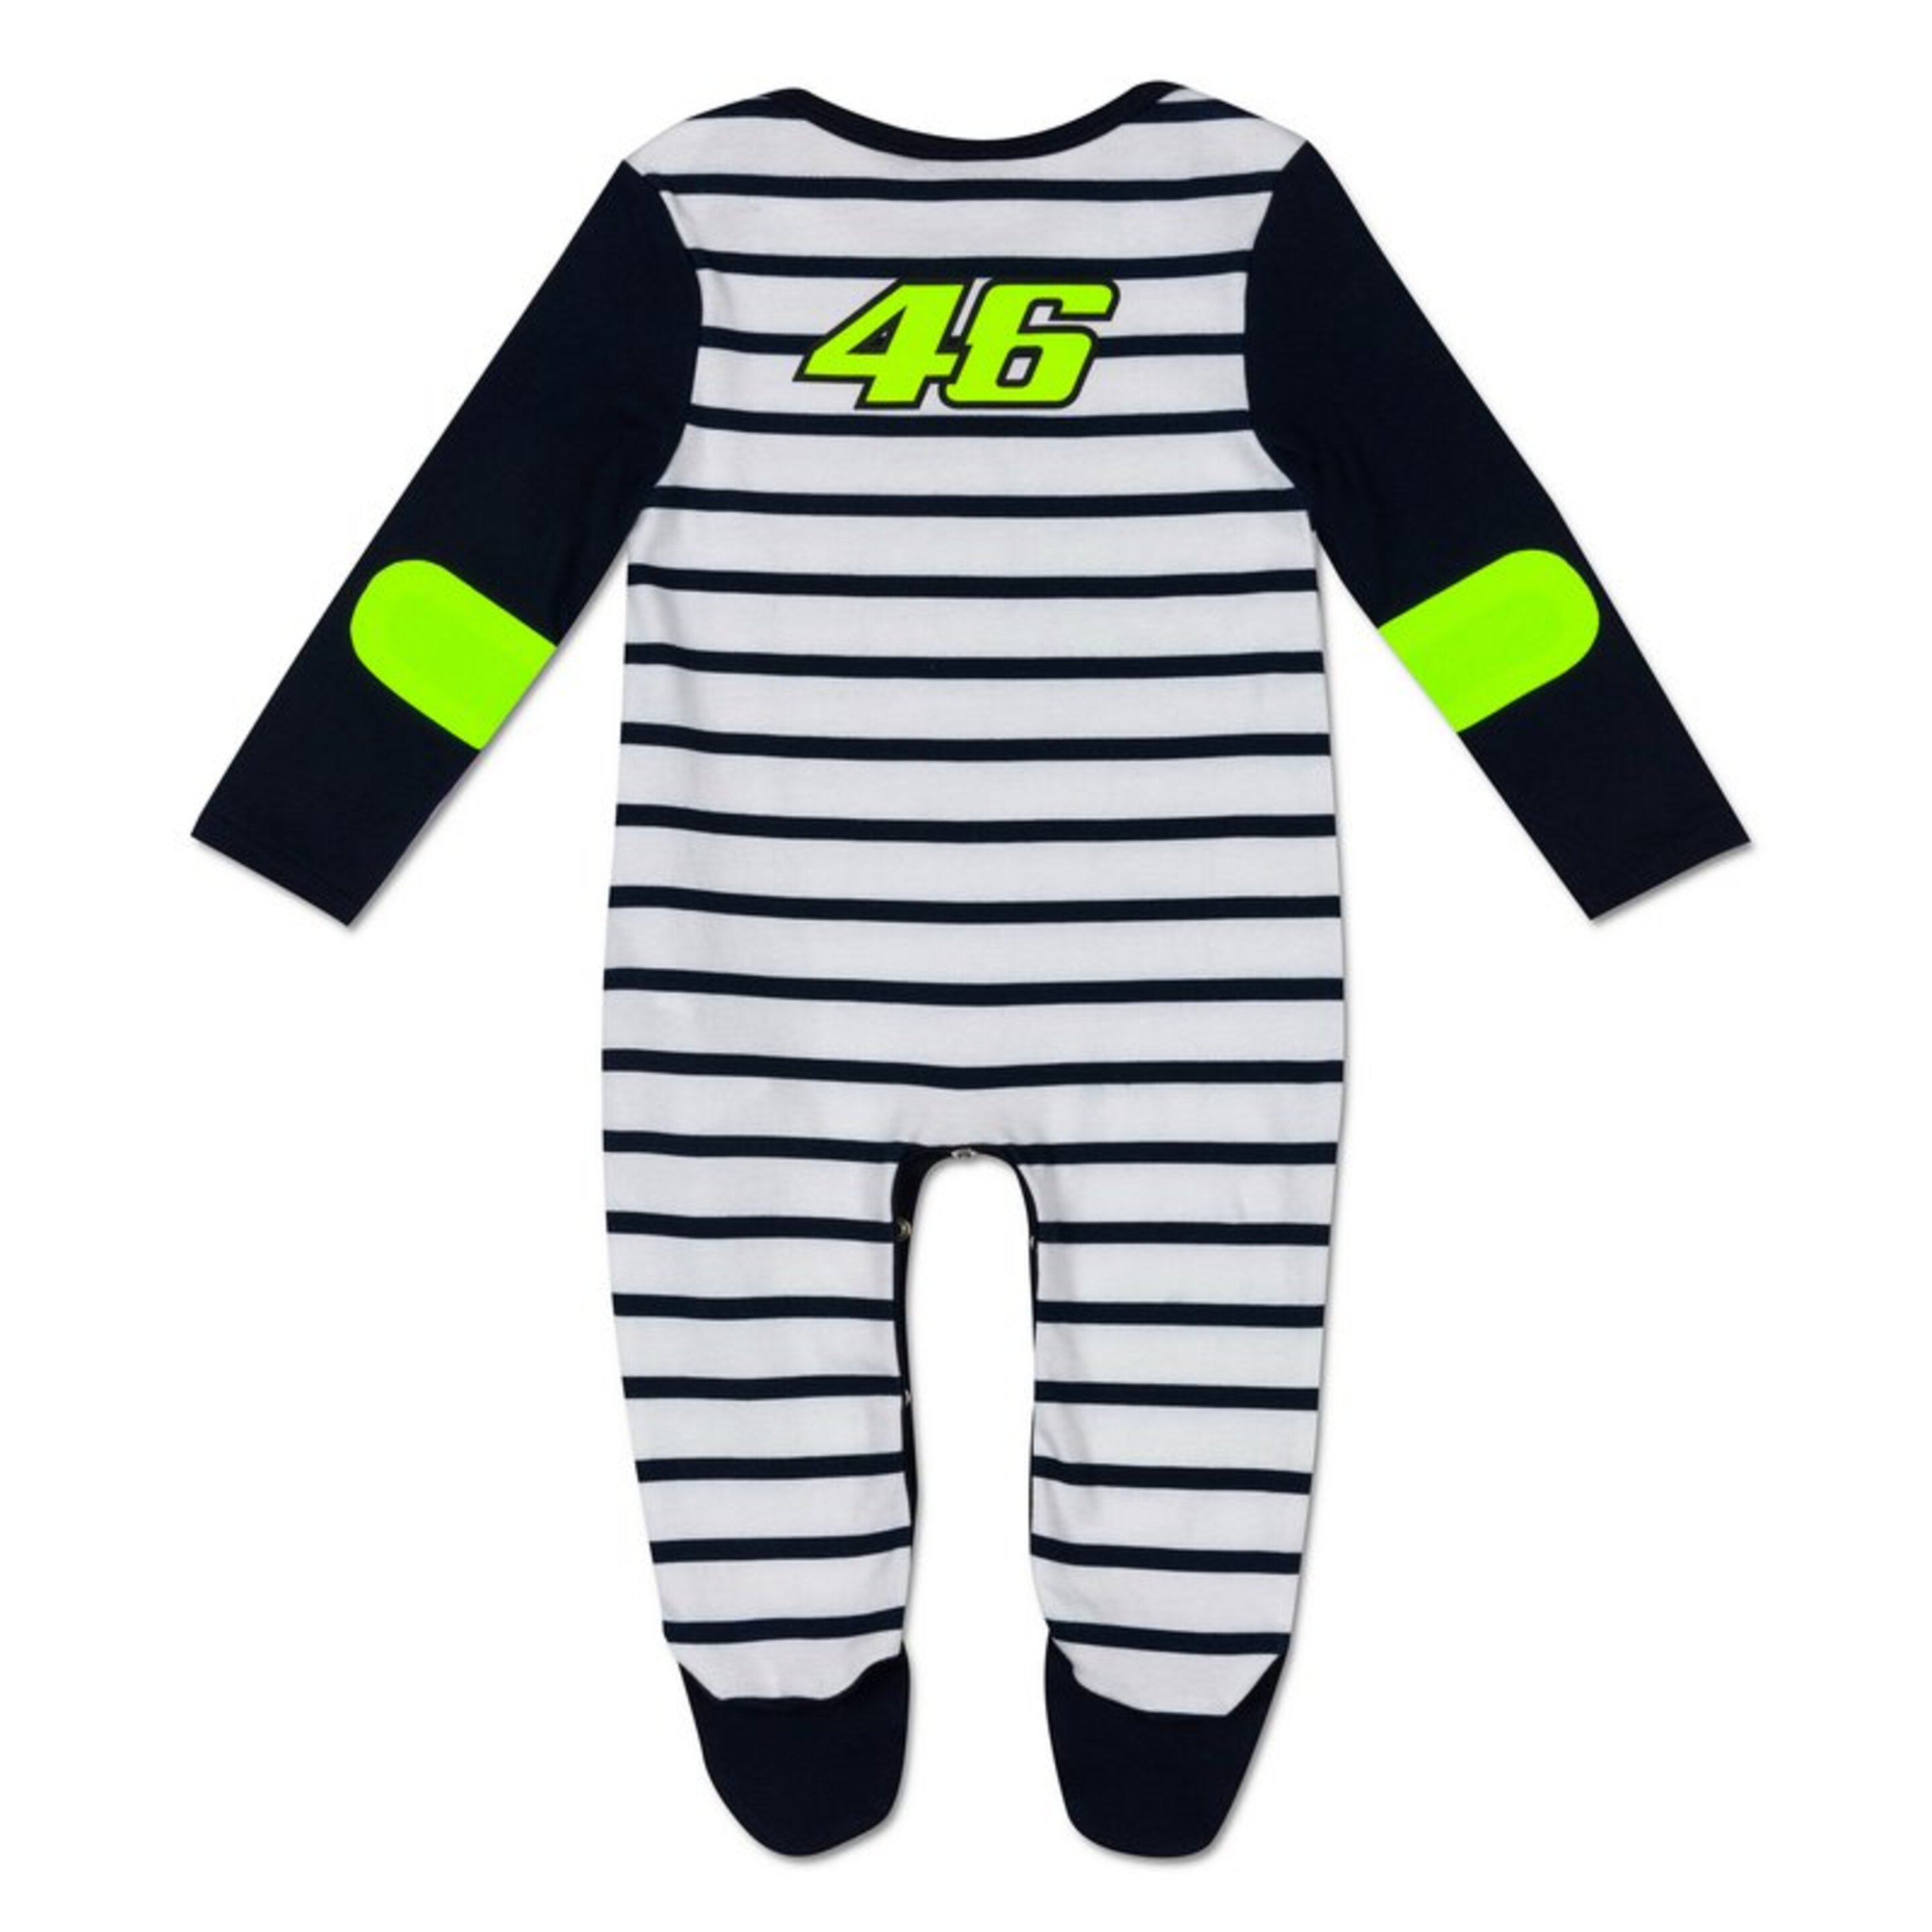 Pijama Bebé Sol Y Luna Valentino Rossi Vr46